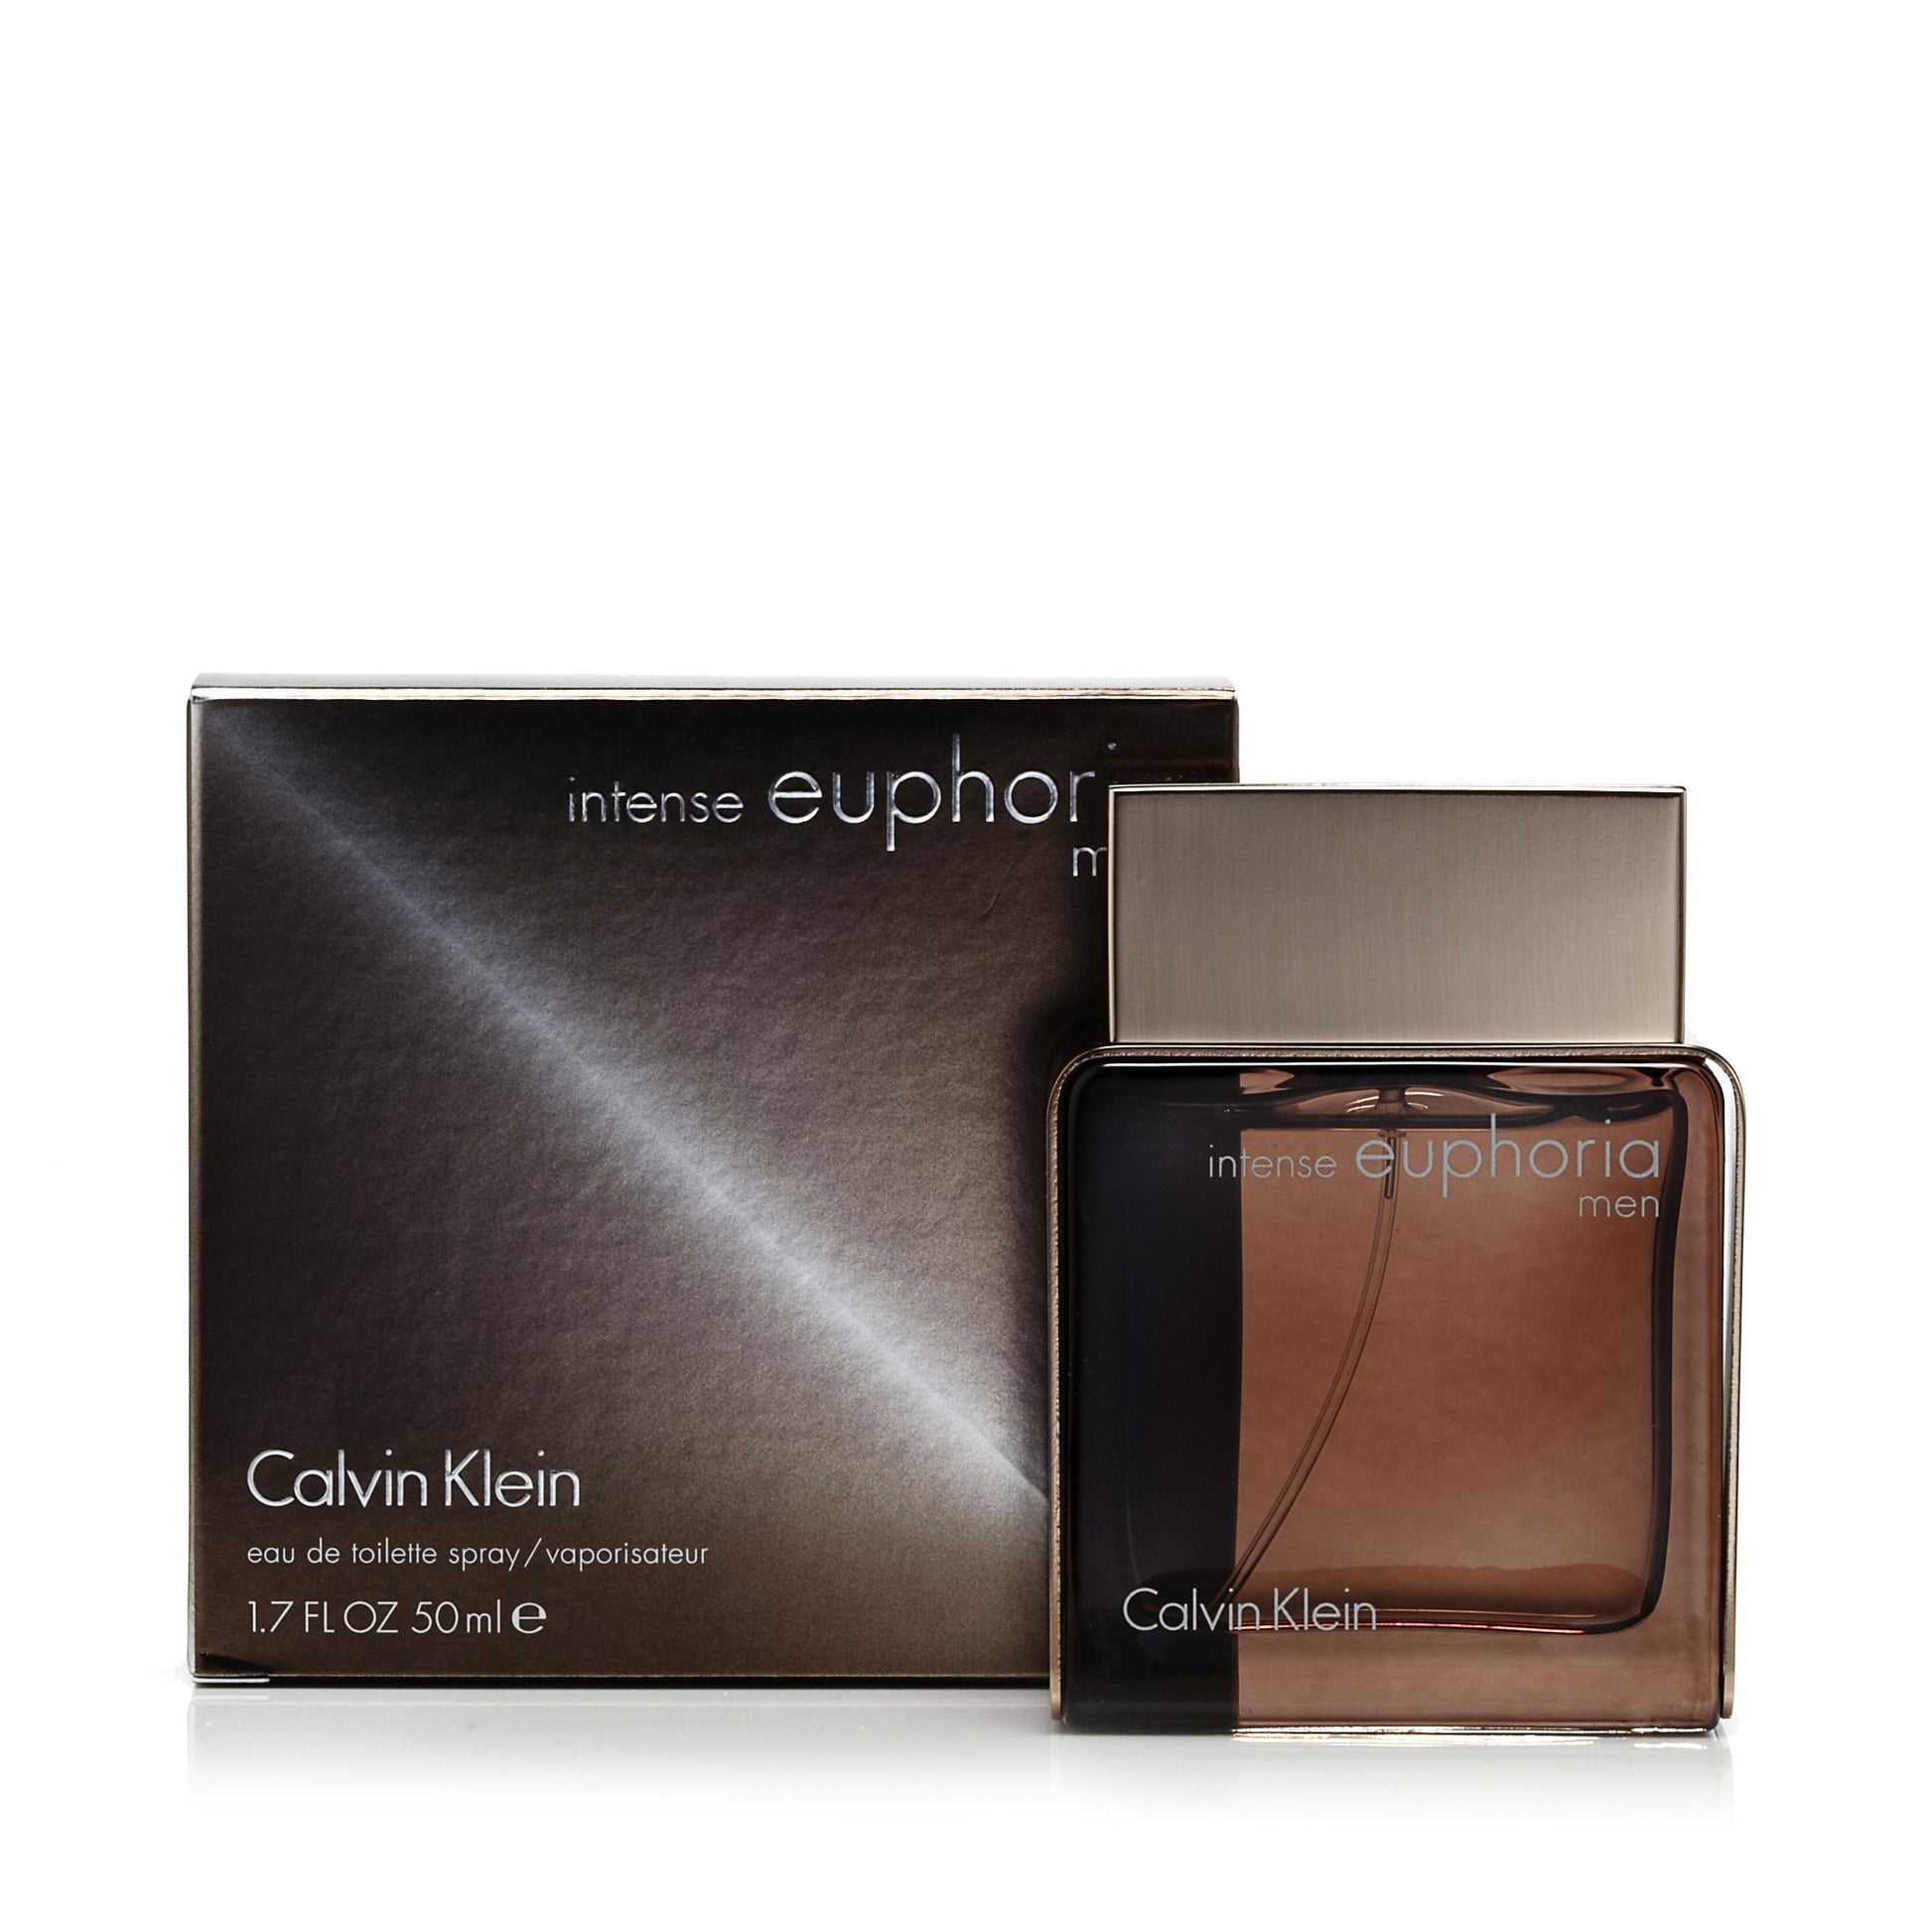 Euphoria Intense Eau de Toilette Spray for Men by Calvin Klein 1.7 oz. Click to open in modal